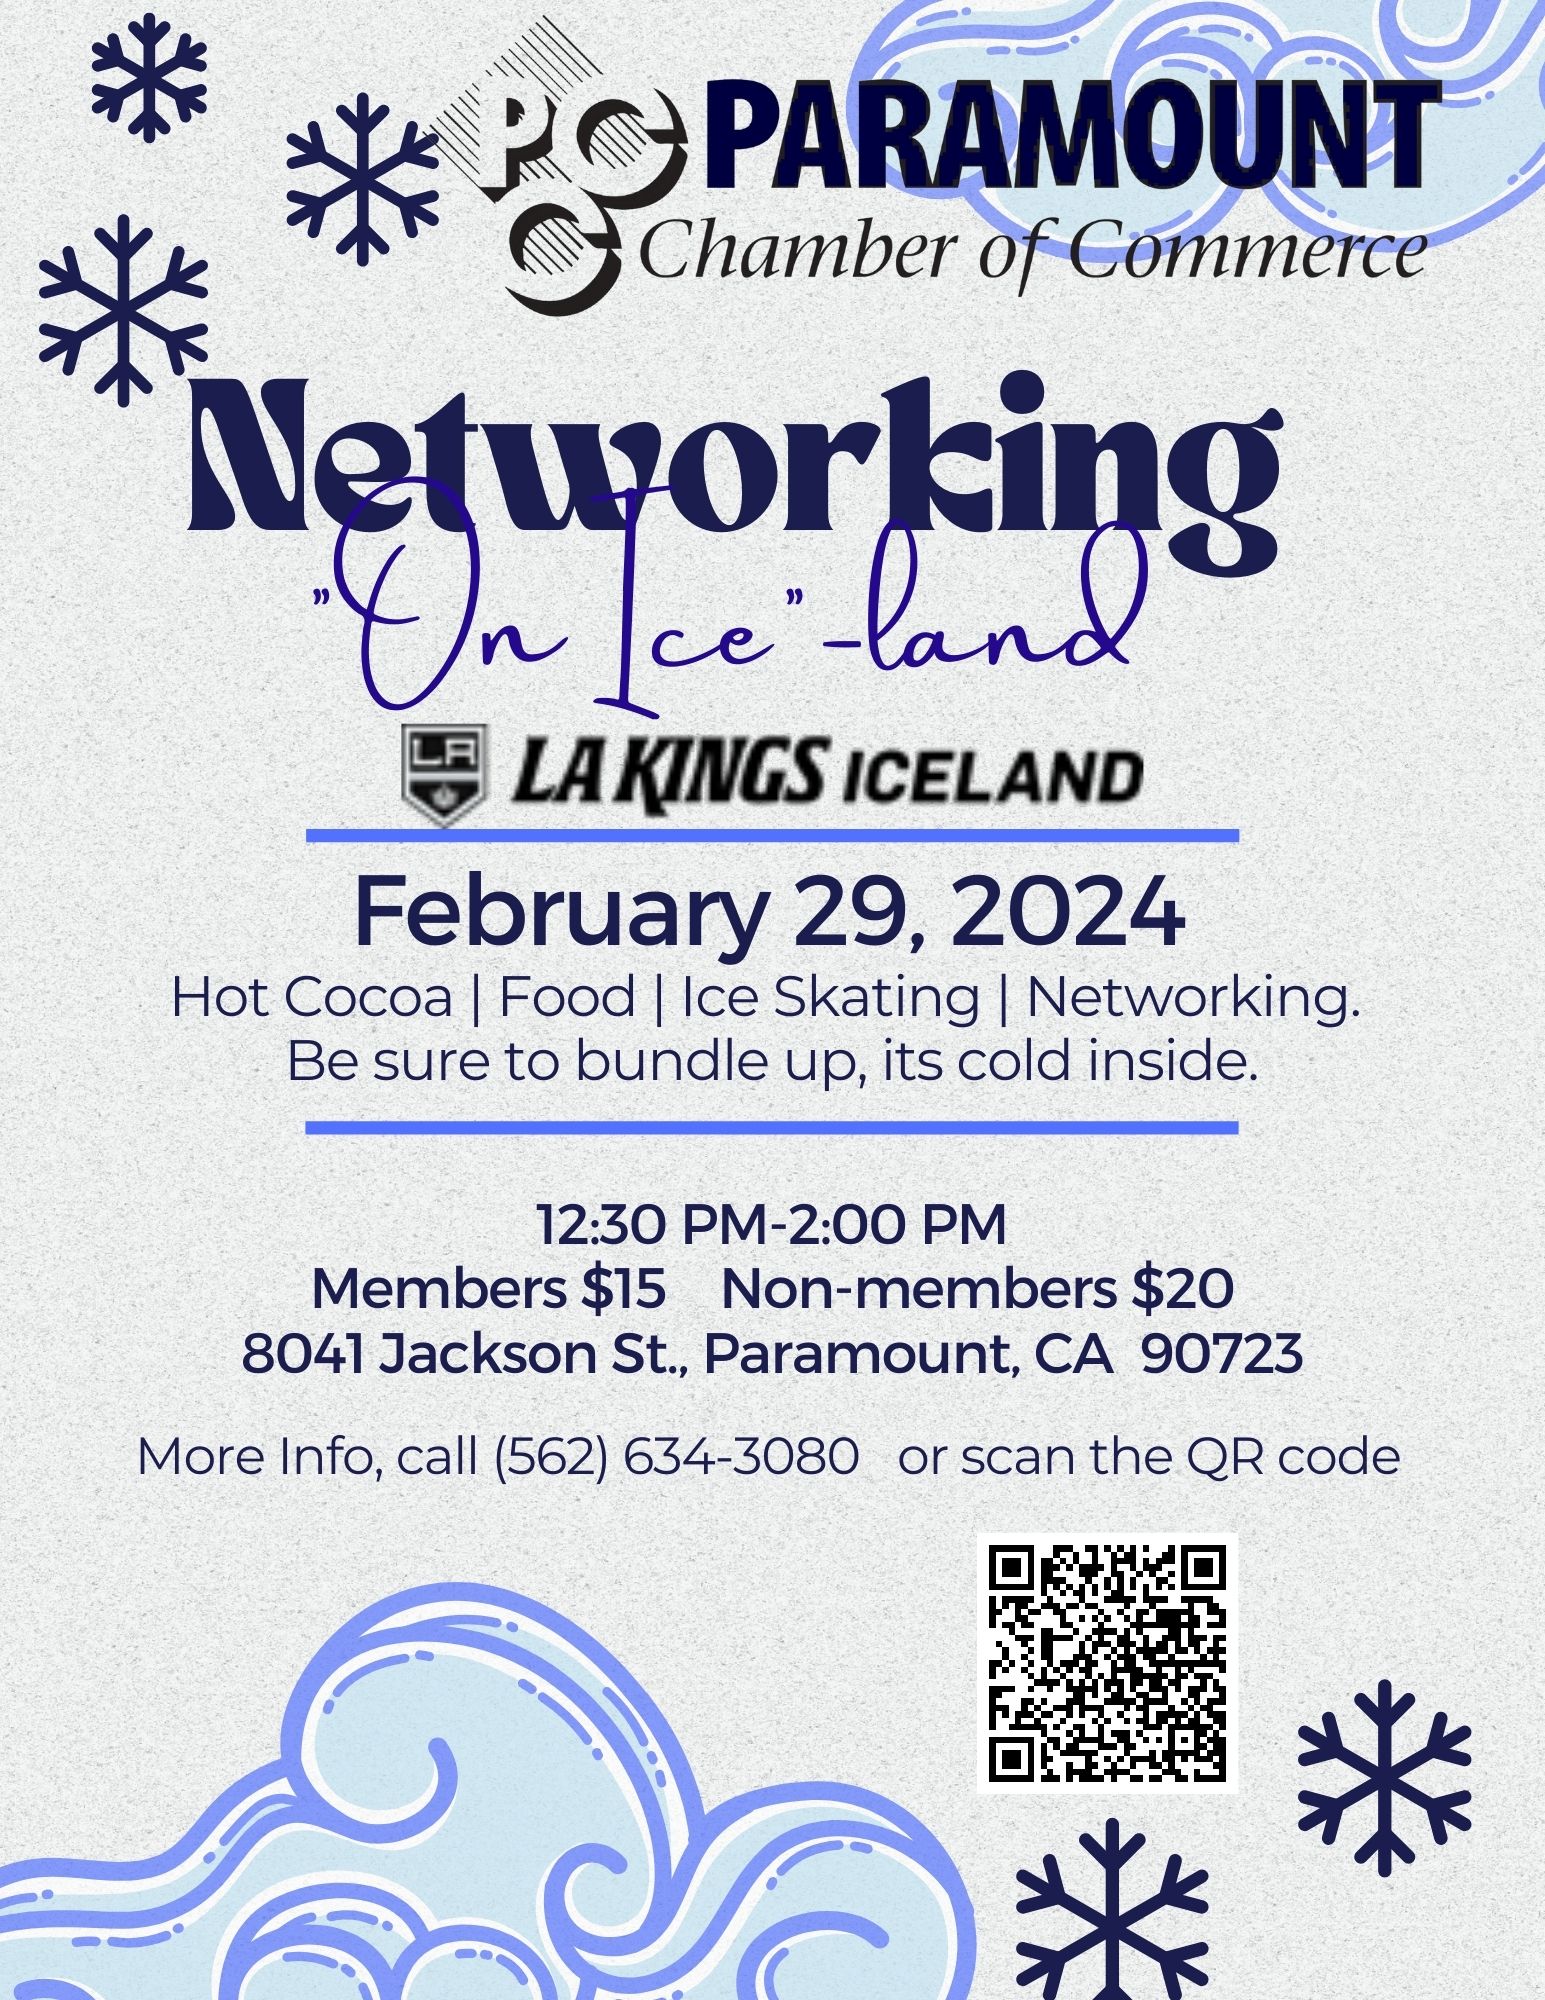 LA Kings IceLand Networking